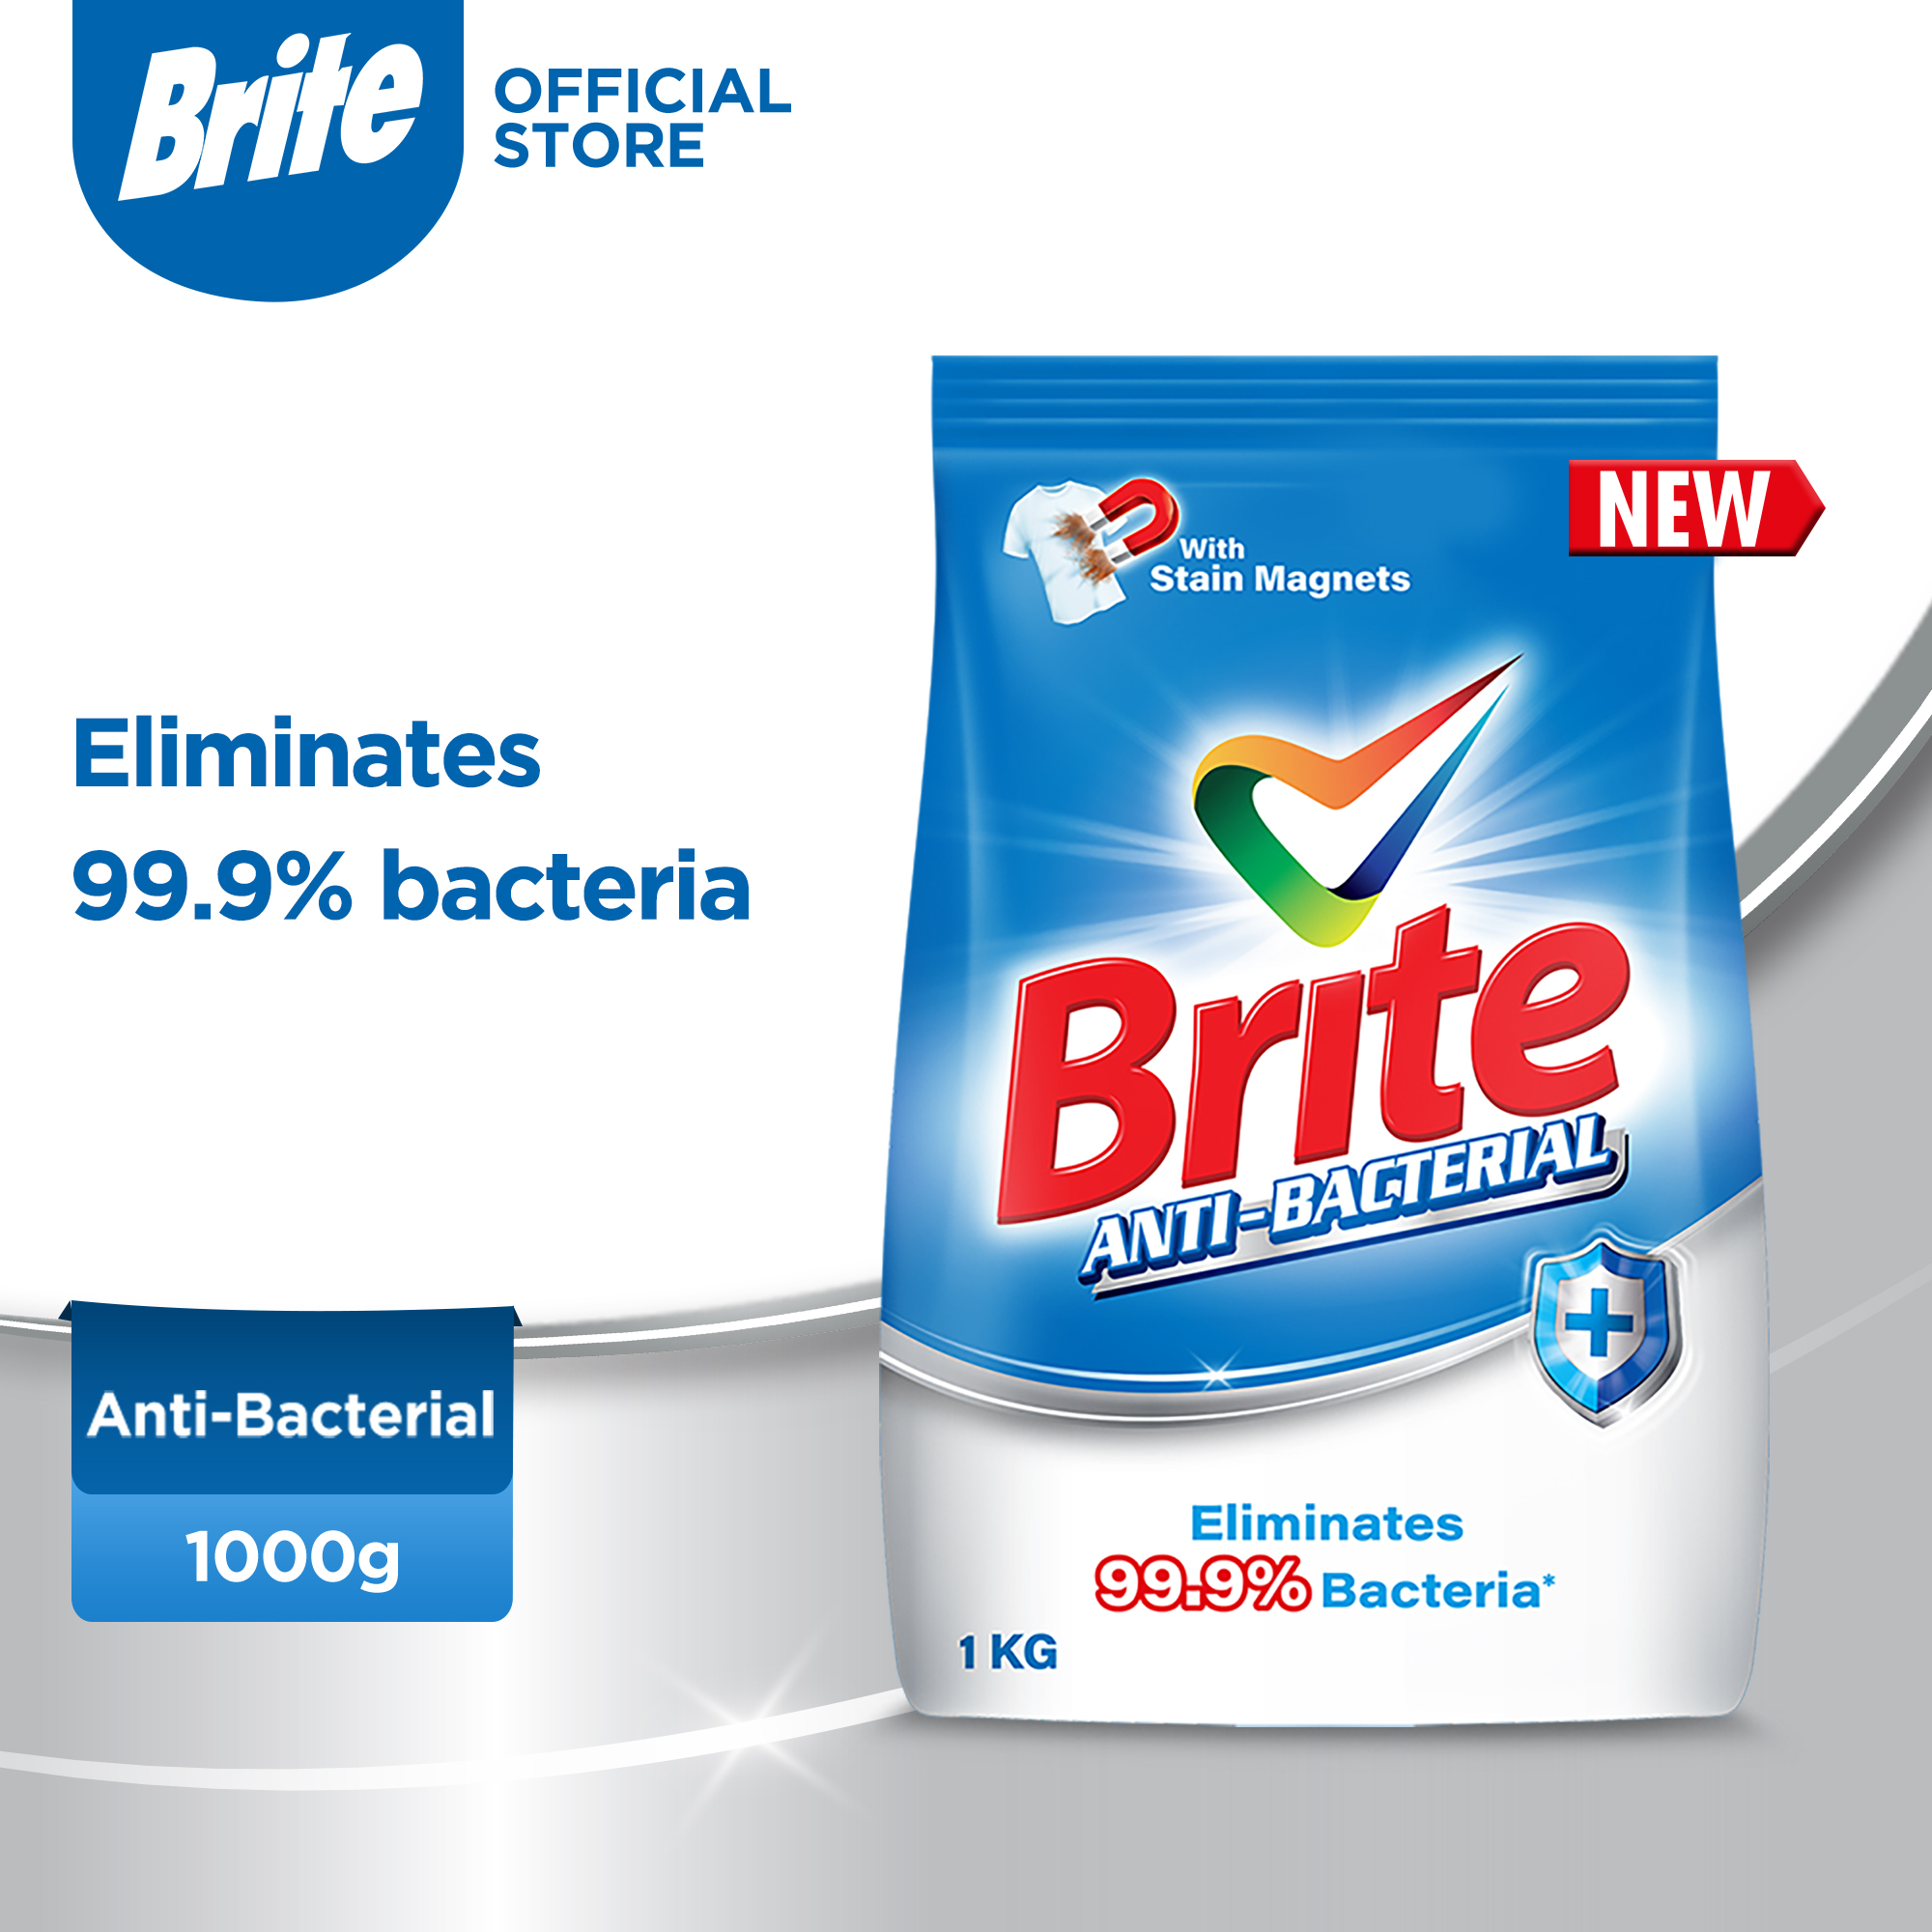 Brite Anti-bacterial 1kg - Detergent Washing Powder